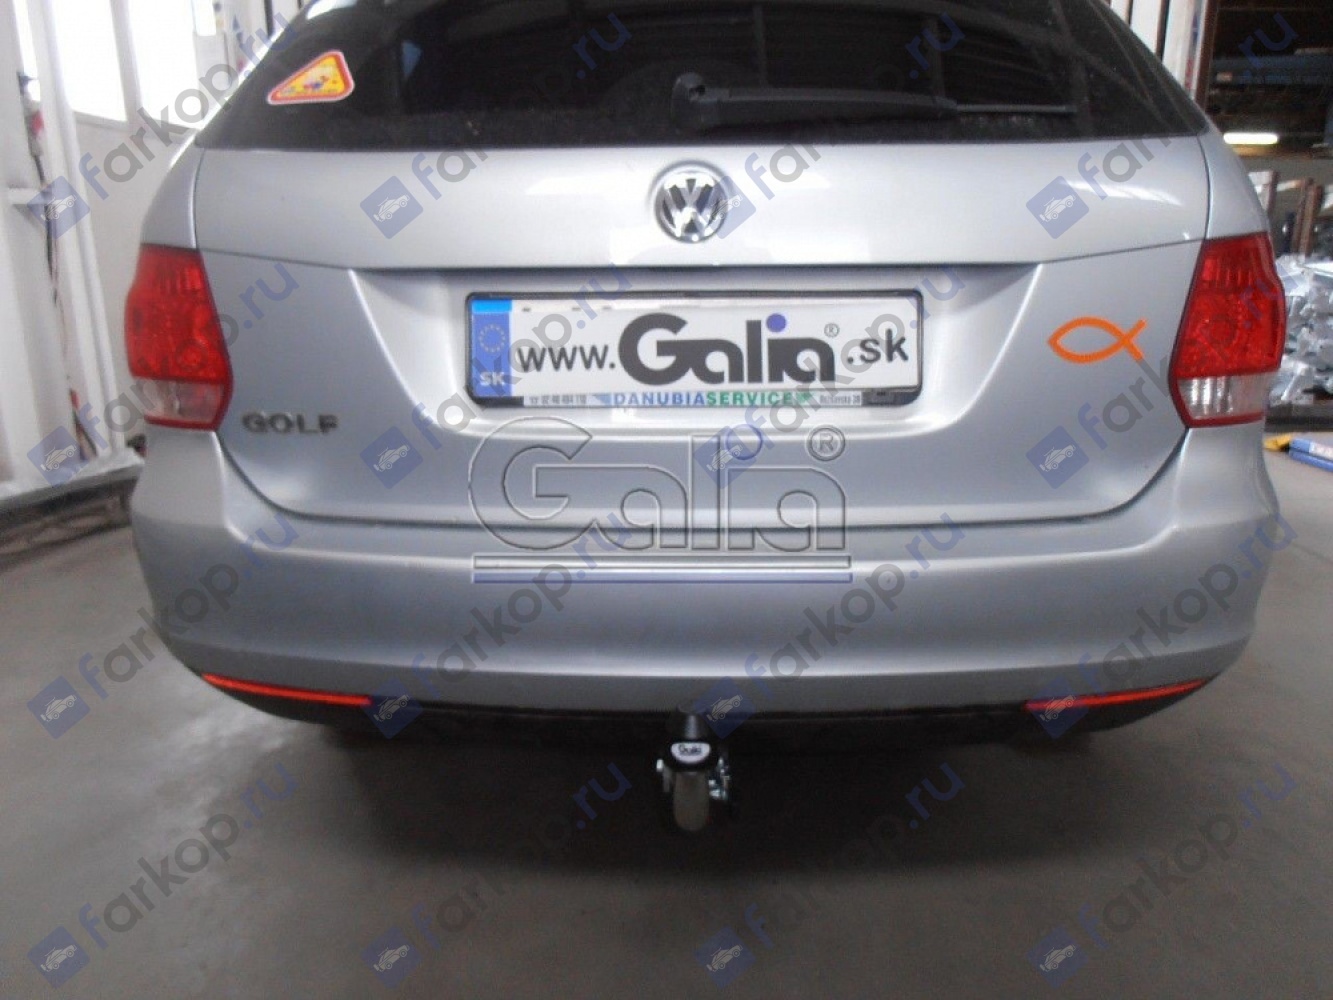 Фаркоп Galia для Volkswagen Golf (универсал) 2007-2008 V066C в 